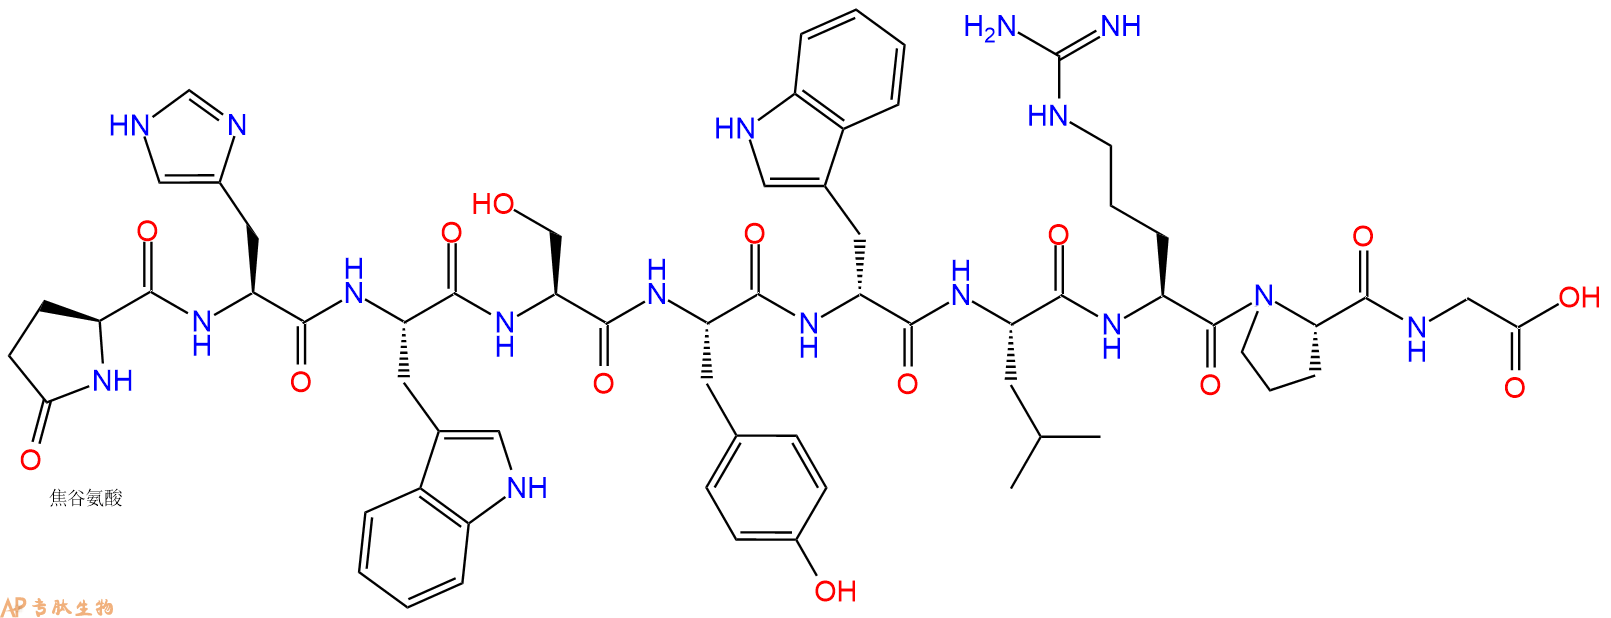 专肽生物产品黄体生成素释放激素(D-Trp⁶)-LHRH (free acid)129418-54-8